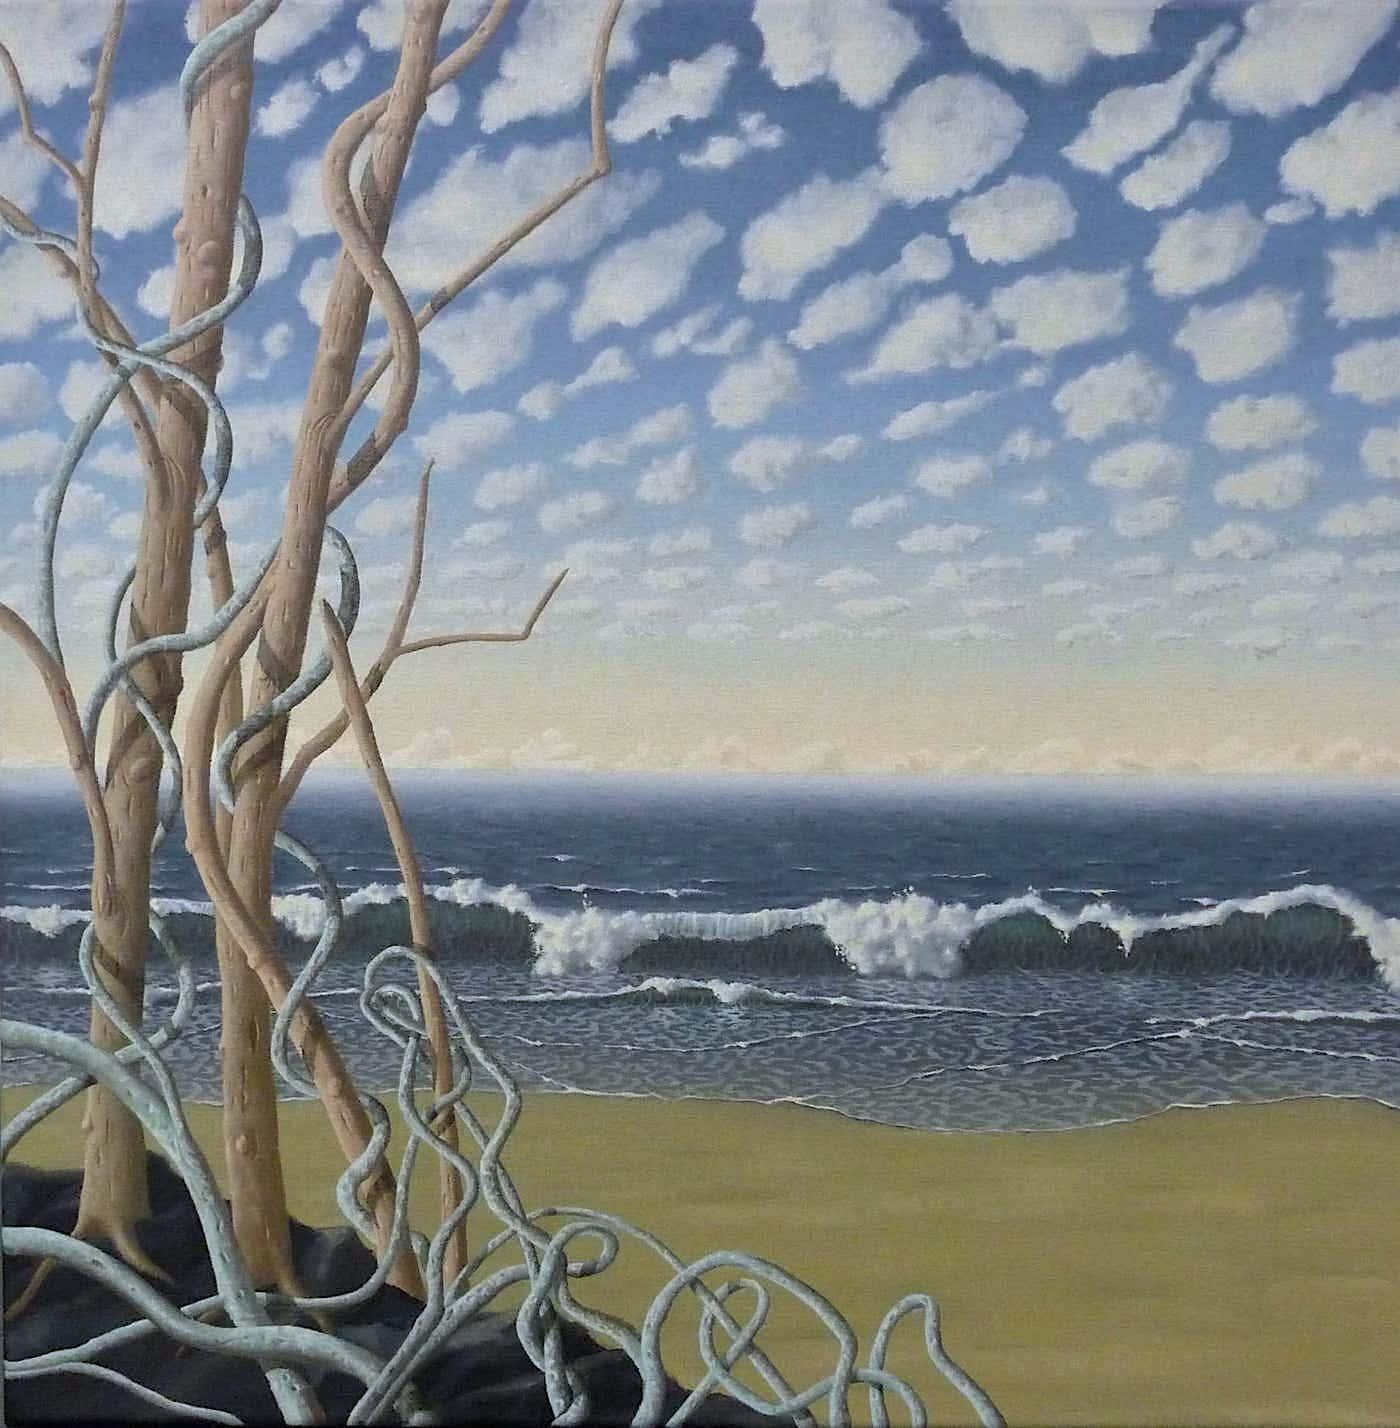 Landscape Painting Anna Geerdes - Paysage de nuages célestes - réalisme original surréaliste paysage marin-océan-paysage de nuages